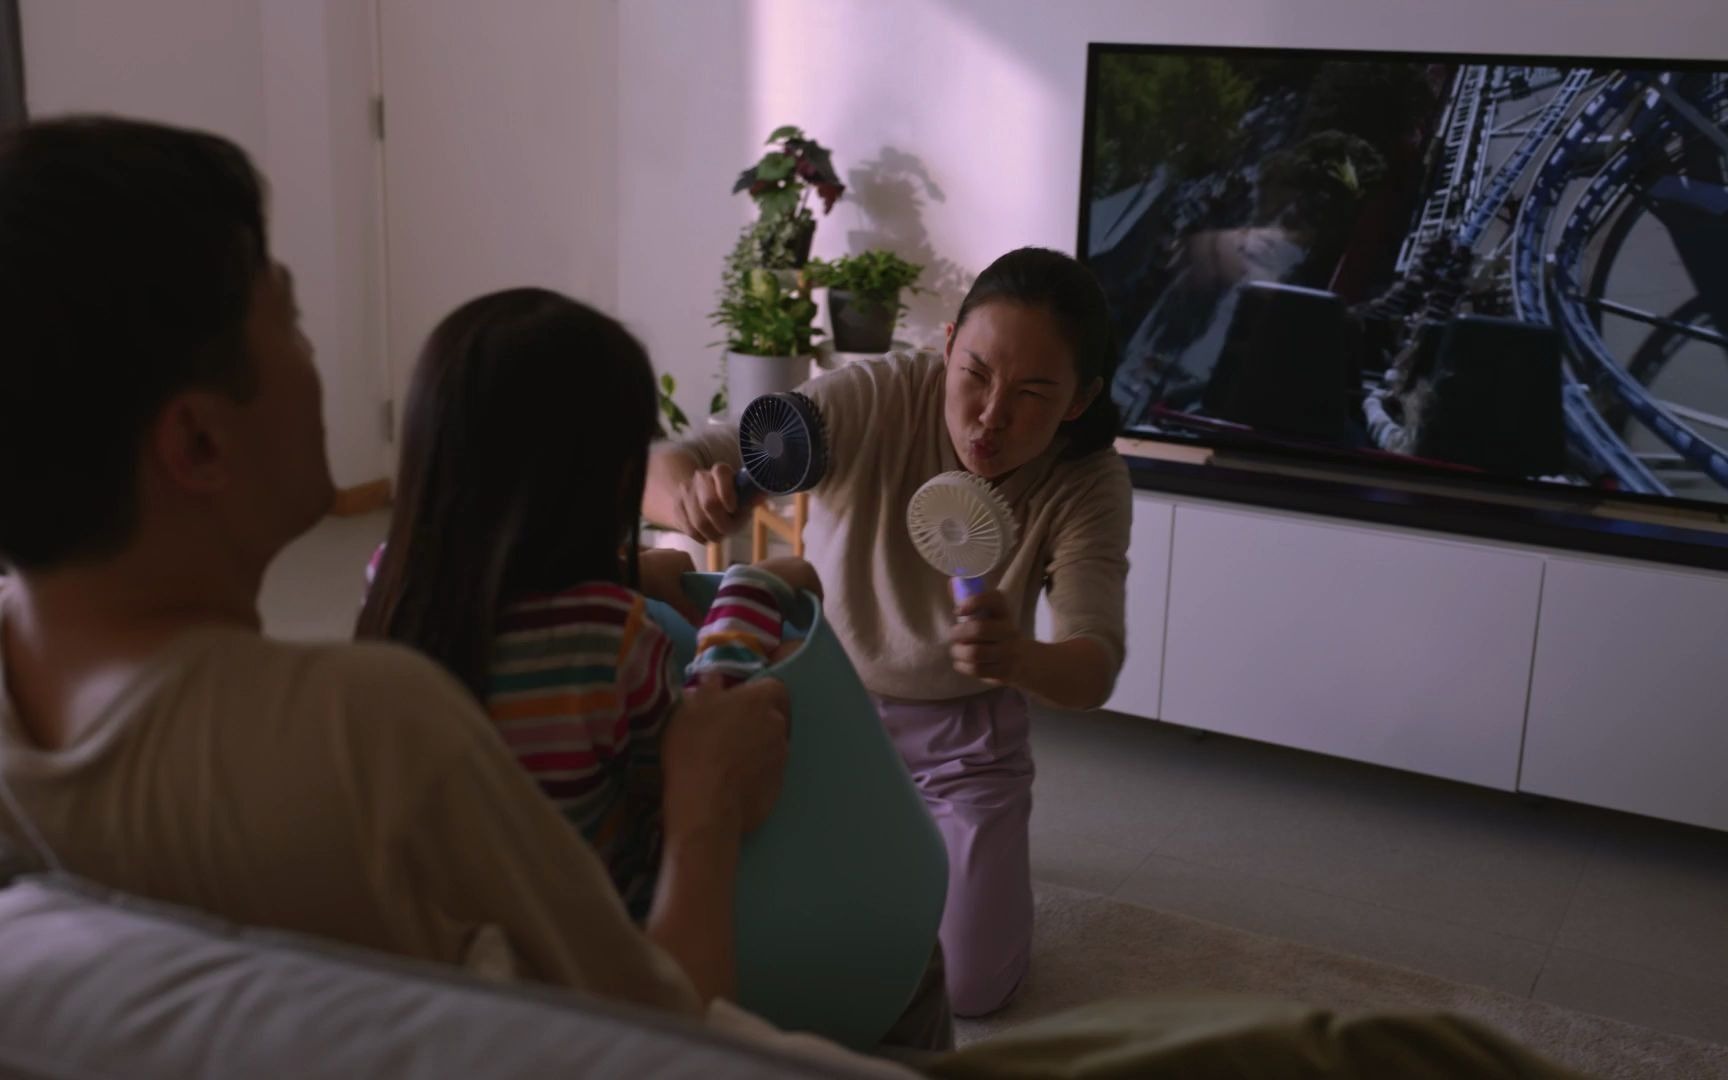 新加坡宜家IKEA温馨广告片 《家是不同的世界》文案重点参考  一家人幸福家庭生活状态组参考学习